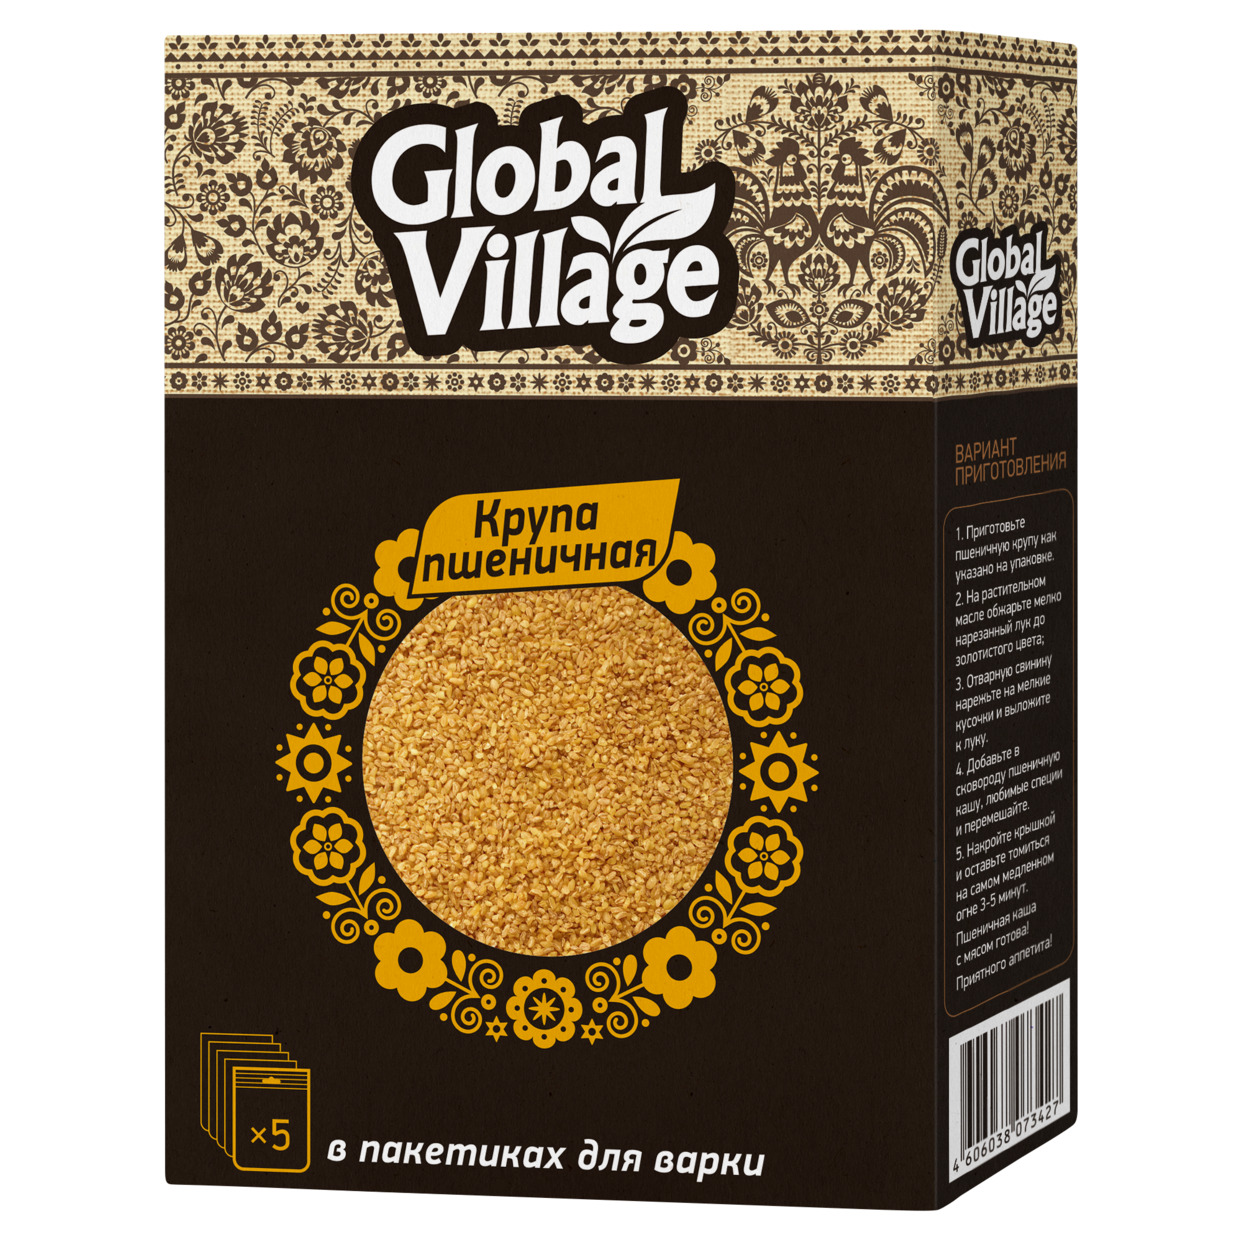 Крупа пшеничная в пакетиках для варки Global Village 5*80 гр по акции в Пятерочке